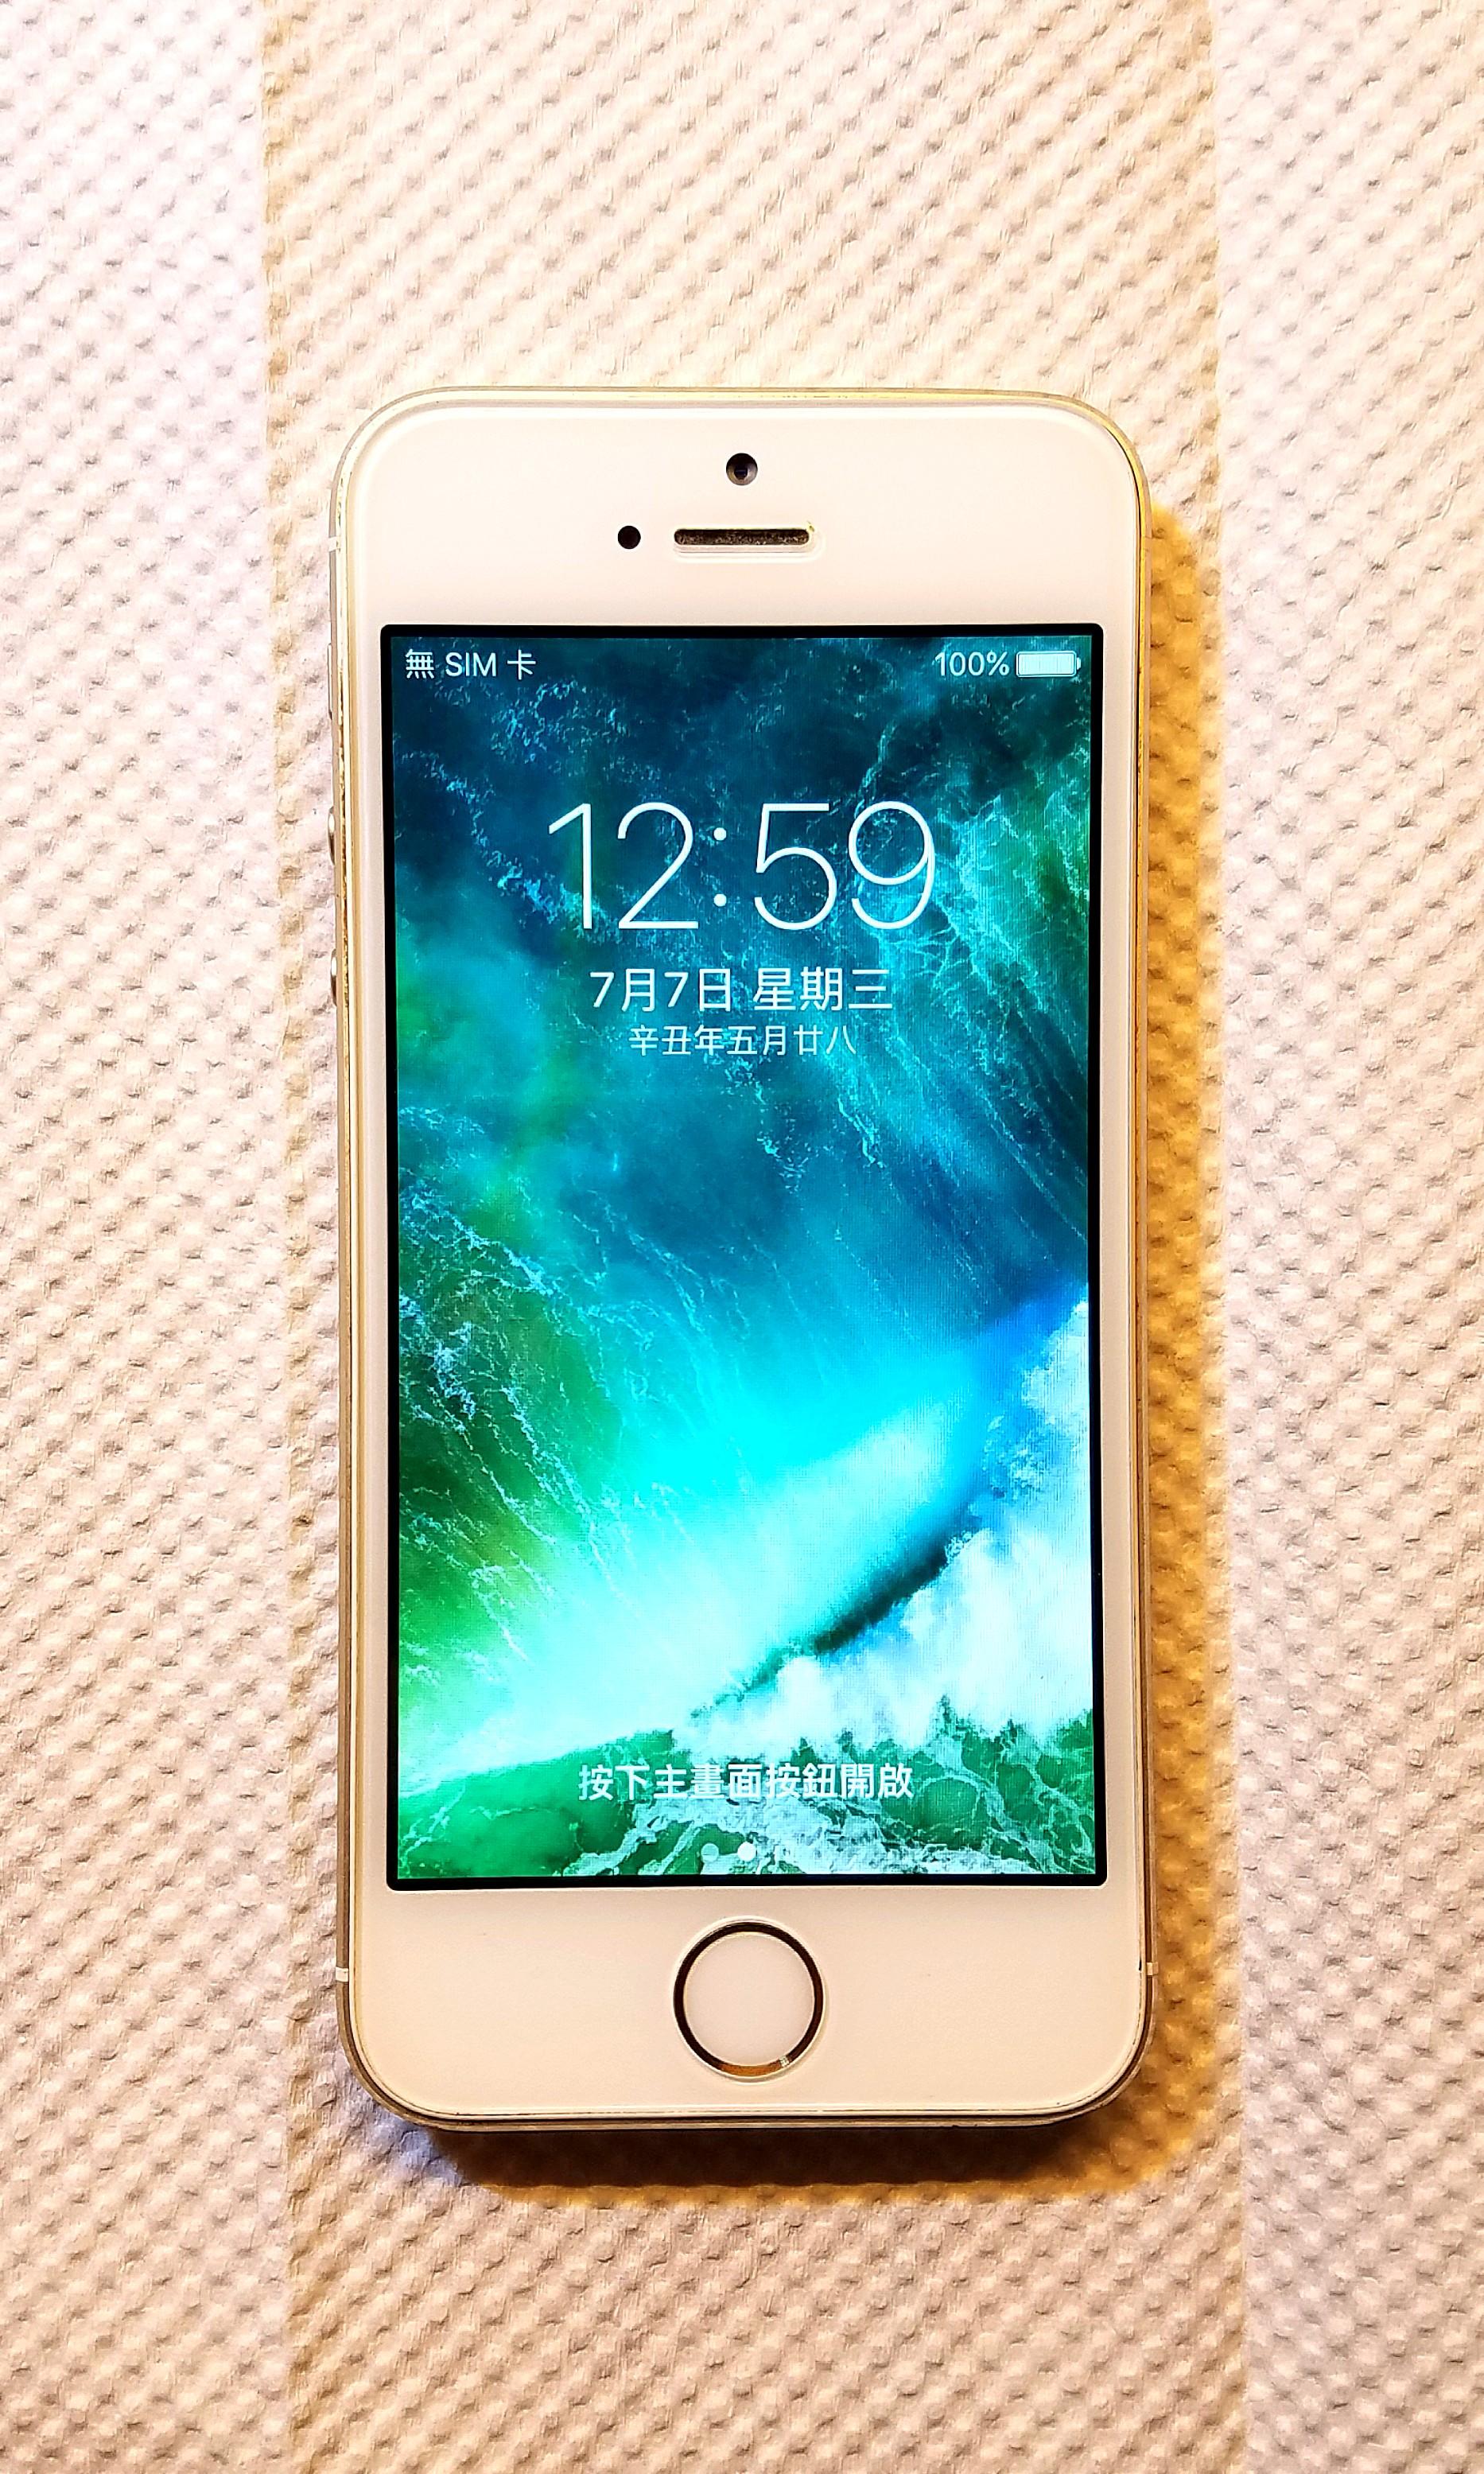 Phalanx tolerantie Onbevreesd iPhone 5s 32Gb Gold, 電子產品, 手提電話- Carousell